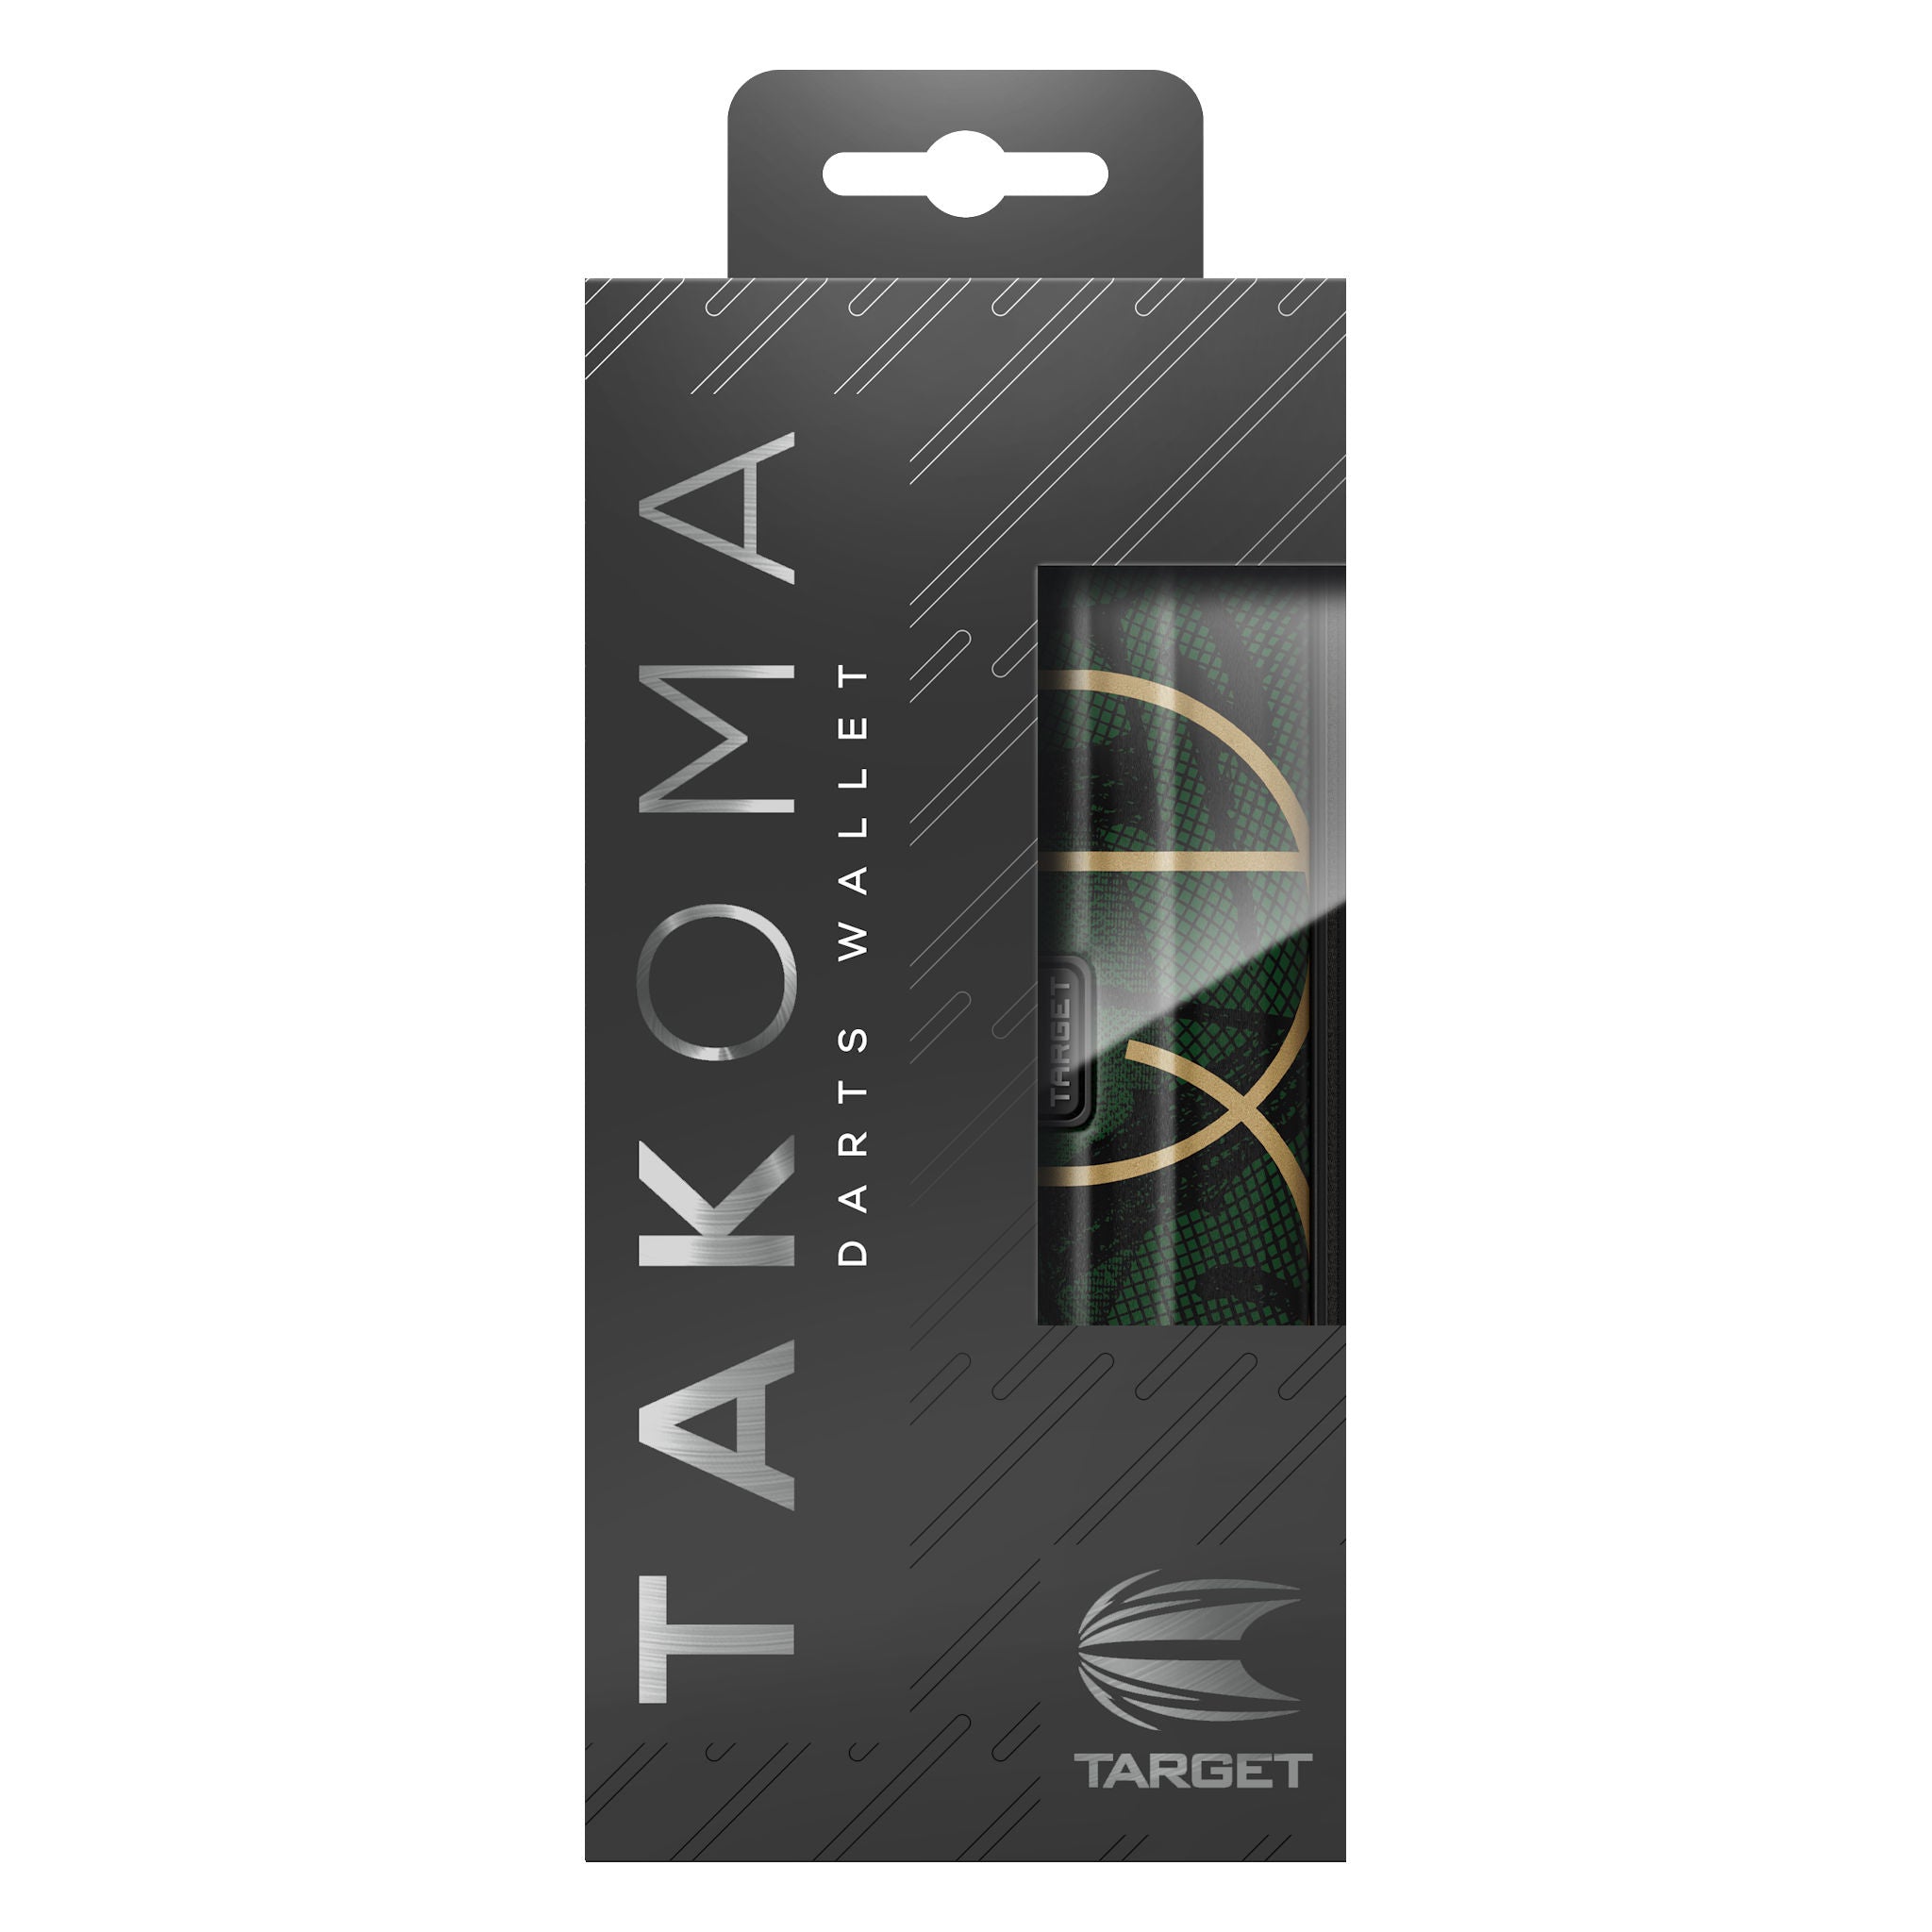 Takoma Cult Wallet packaging